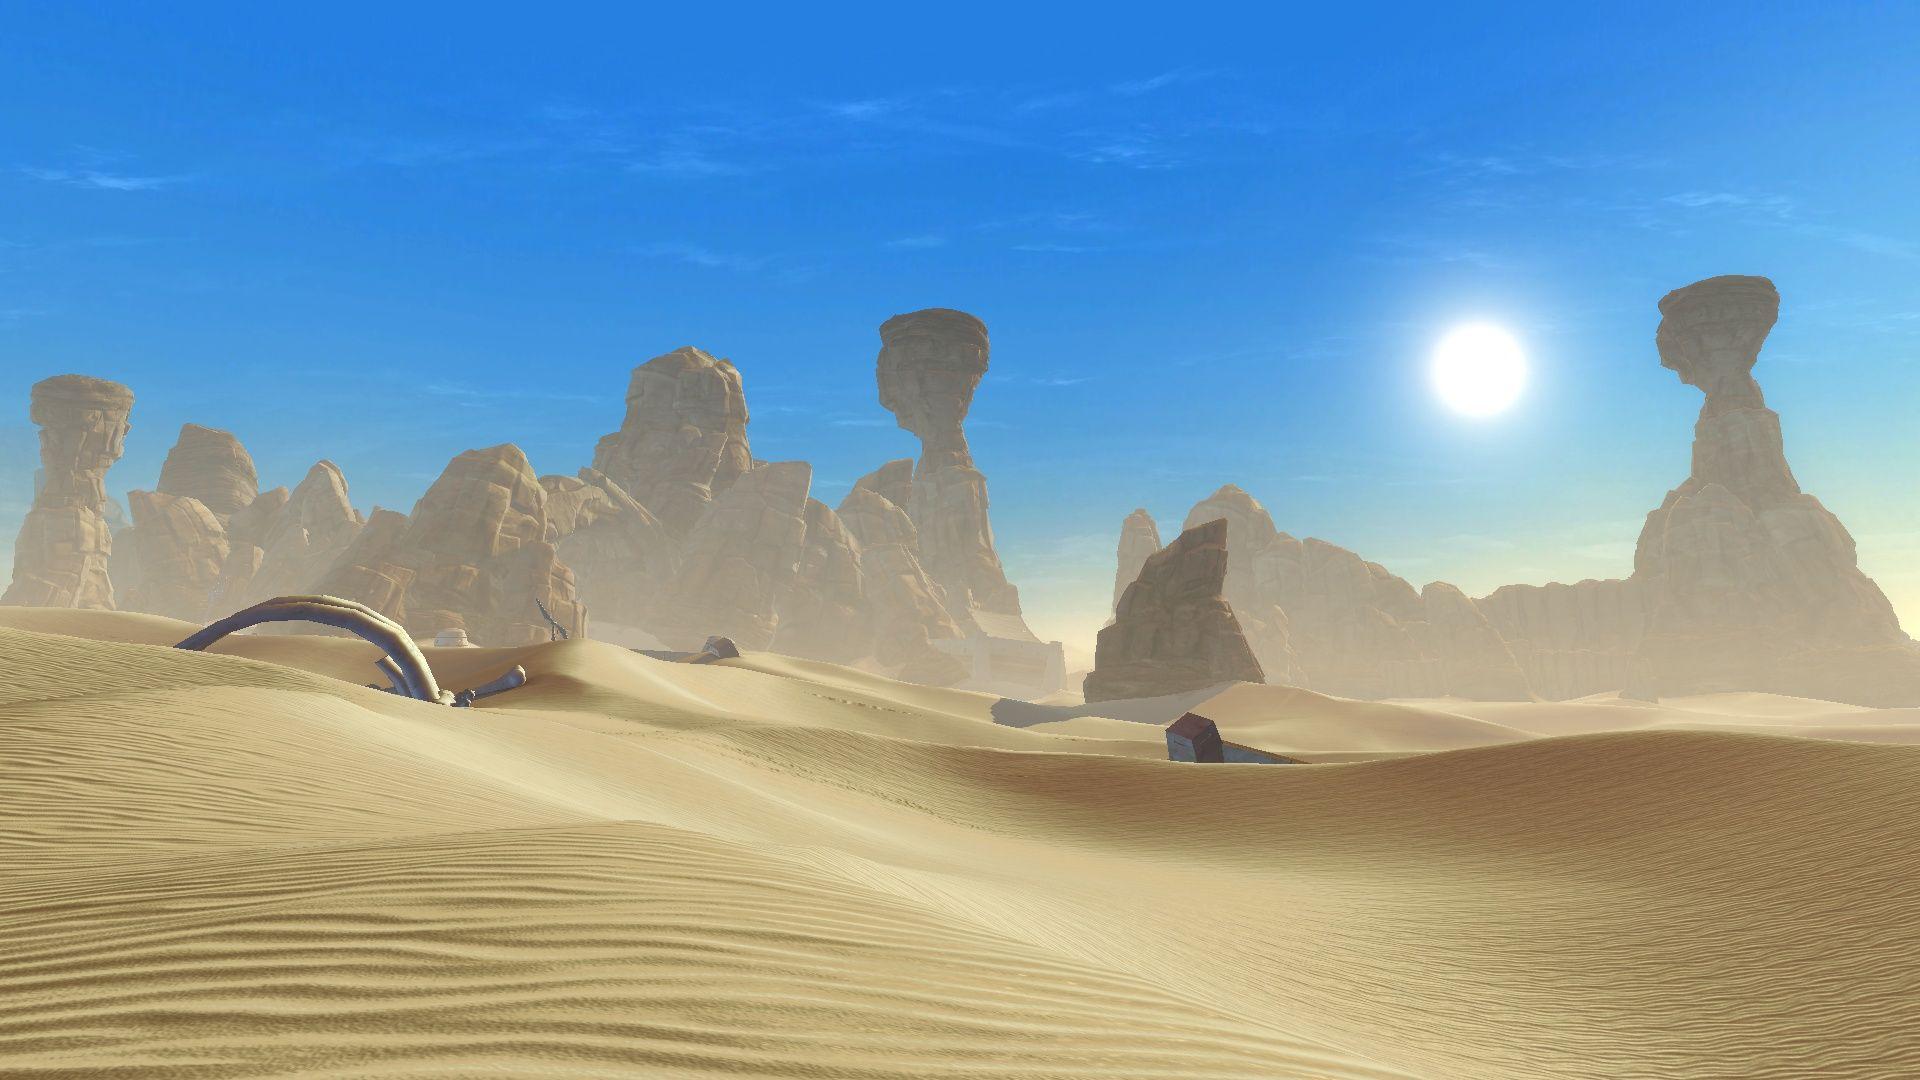 Star Wars Planet Background